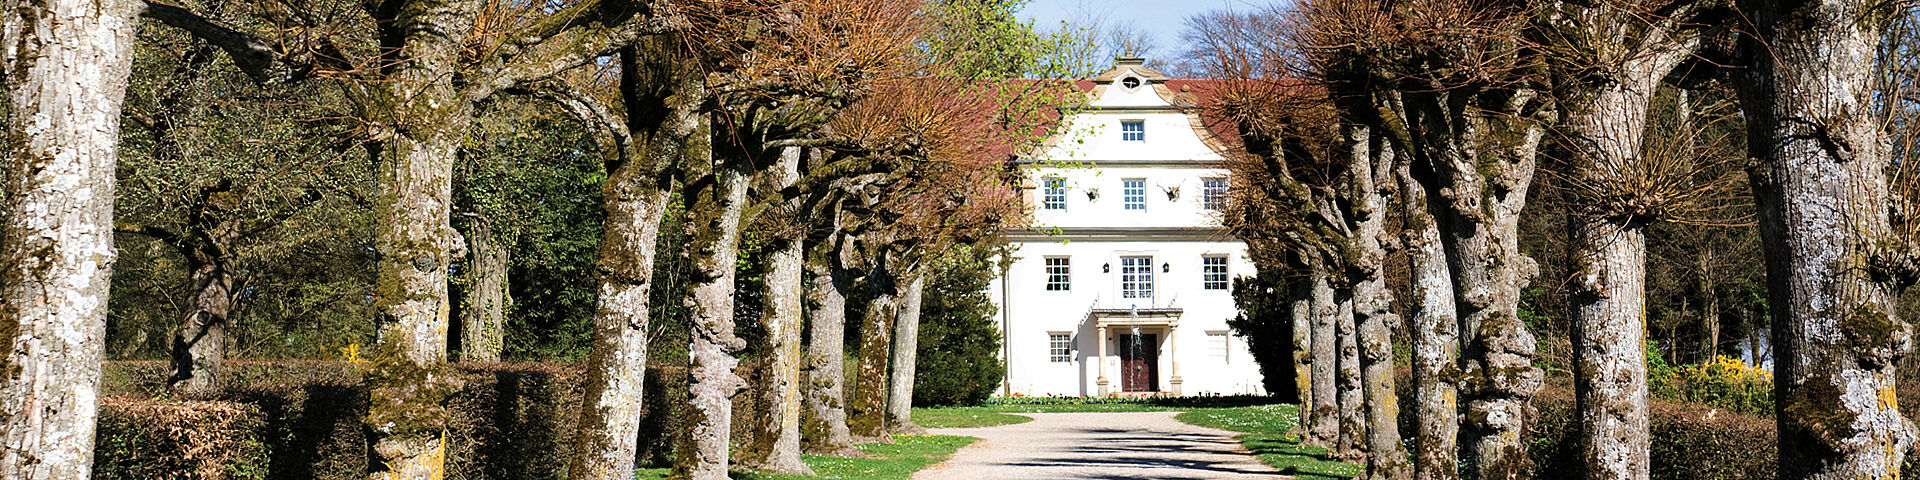 [Translate to Englisch:] Ein weißes Gebäude, das Jagdschloss in Zweiflingen-Friedrichsruhe, ist am Ende einer Allee zu sehen.